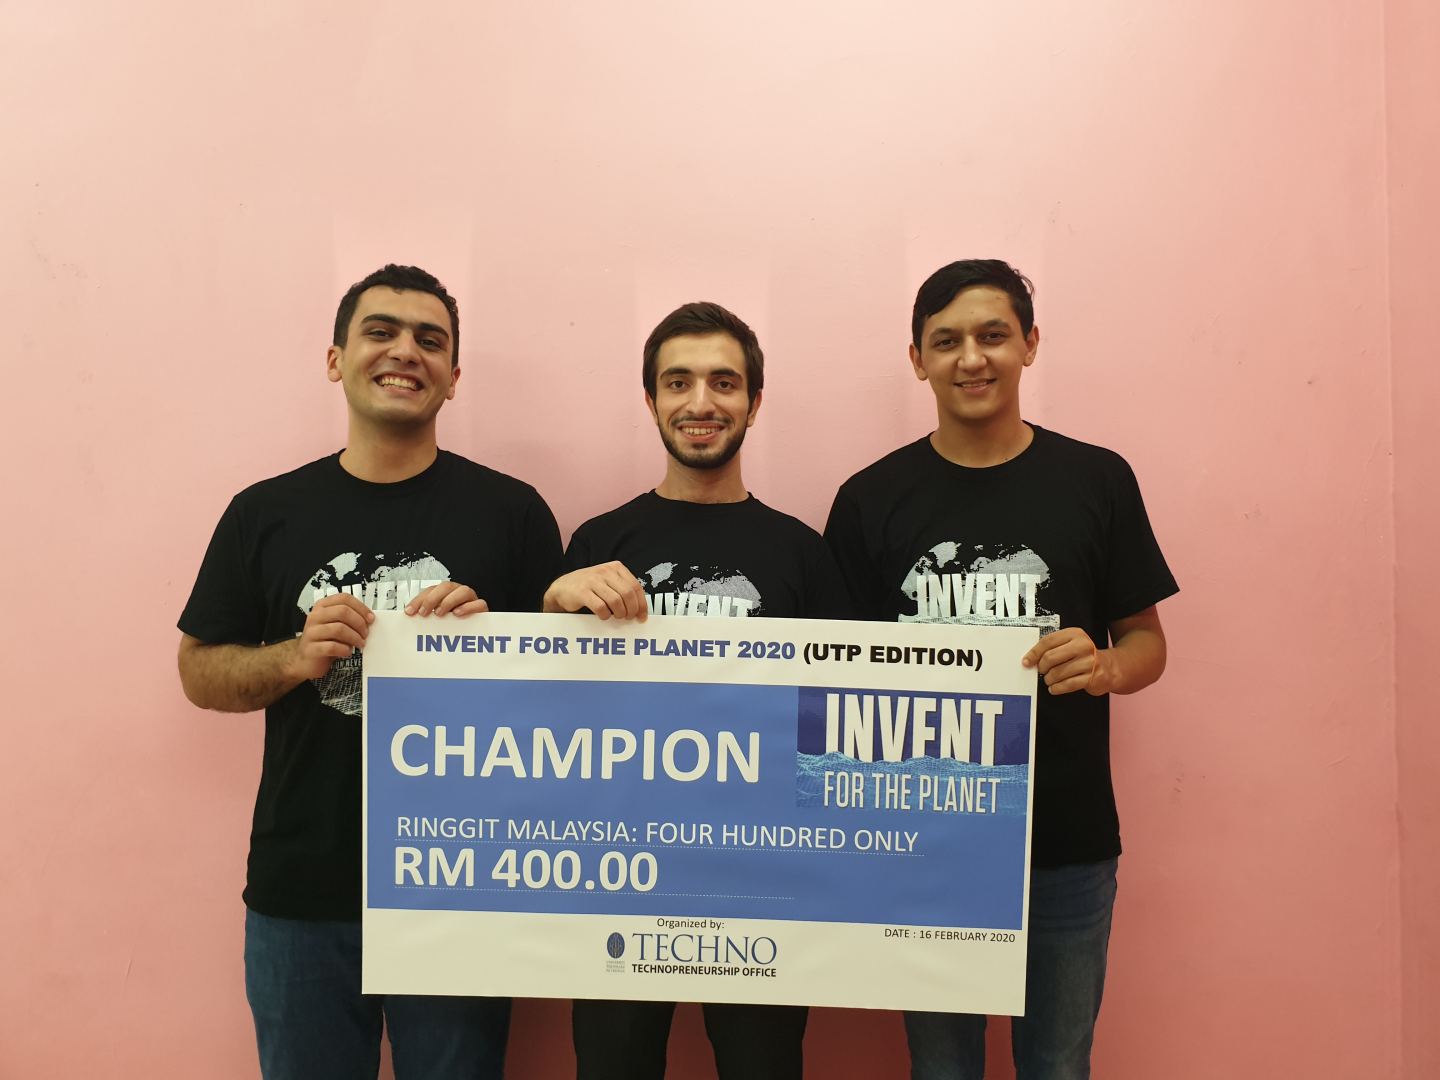 Студенты Бакинской Высшей Школы Нефти стали победителями международного инновационного конкурса в Малайзии (ФОТО)